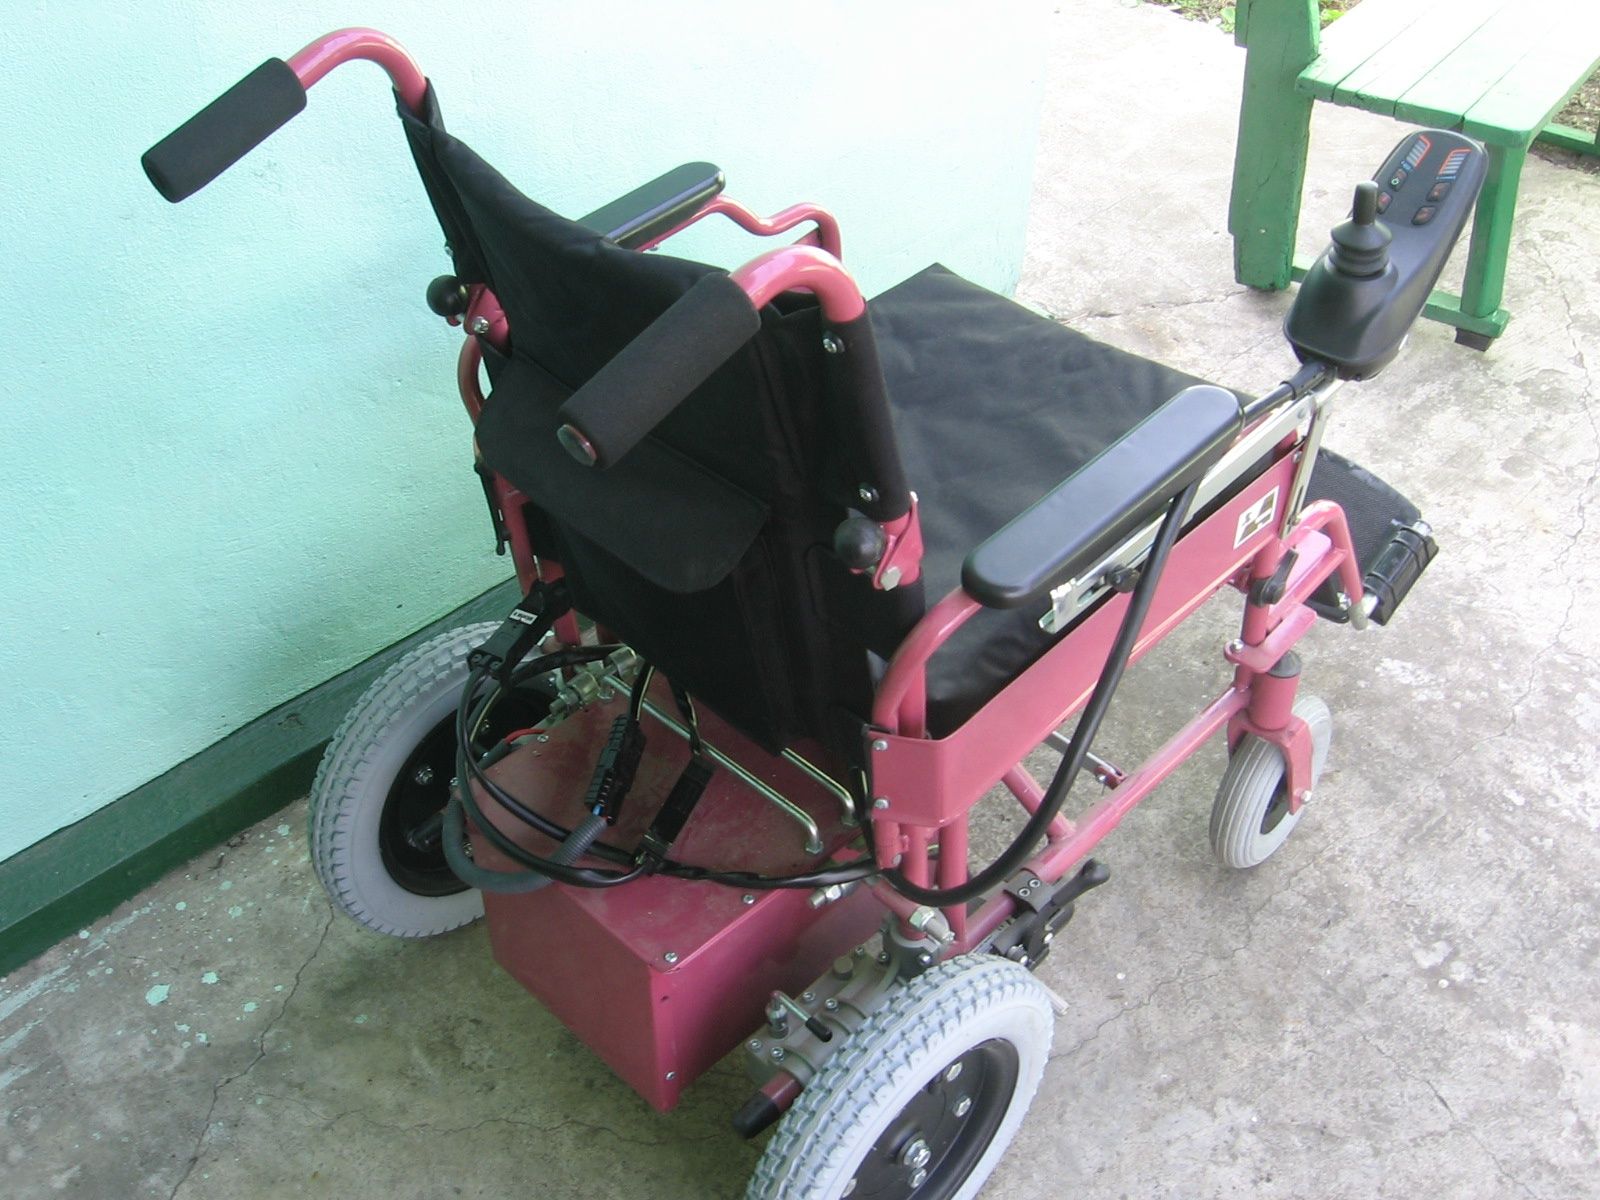 Кресло инвалидное с электроприводом